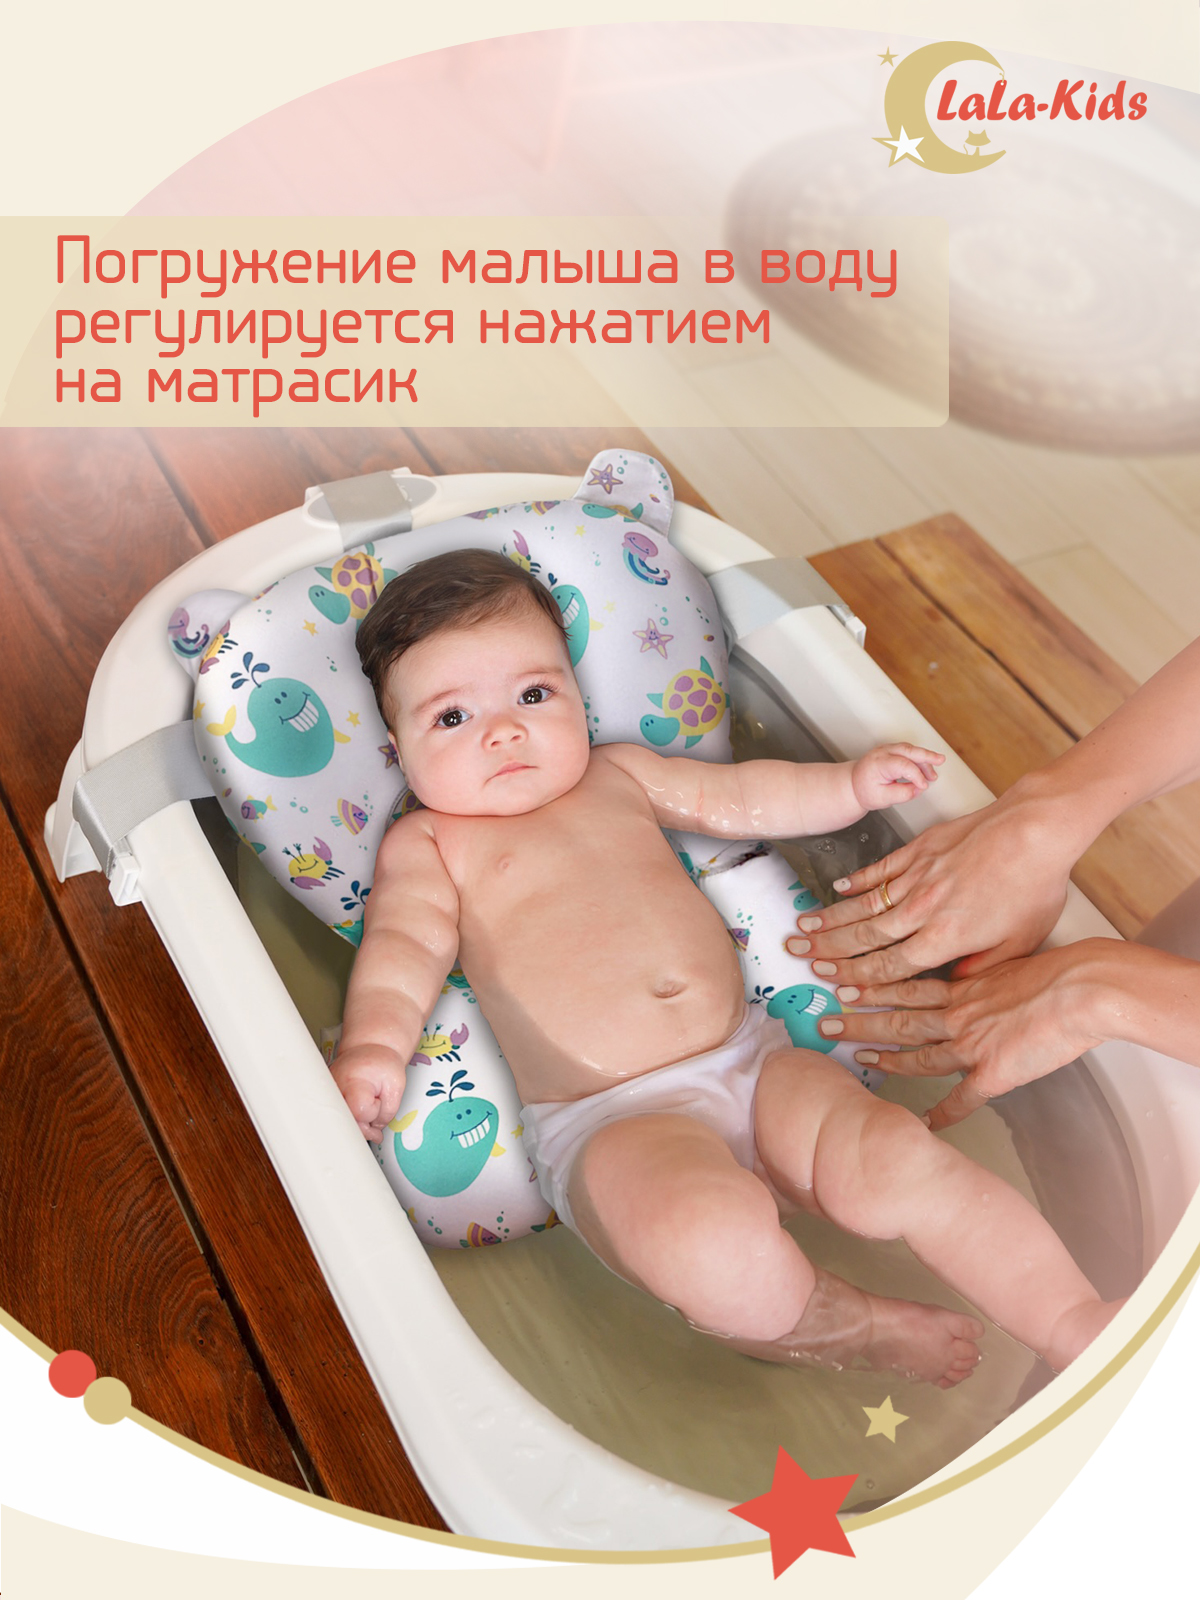 Складная ванночка для купания LaLa-Kids с термометром и матрасиком в комплекте - фото 18